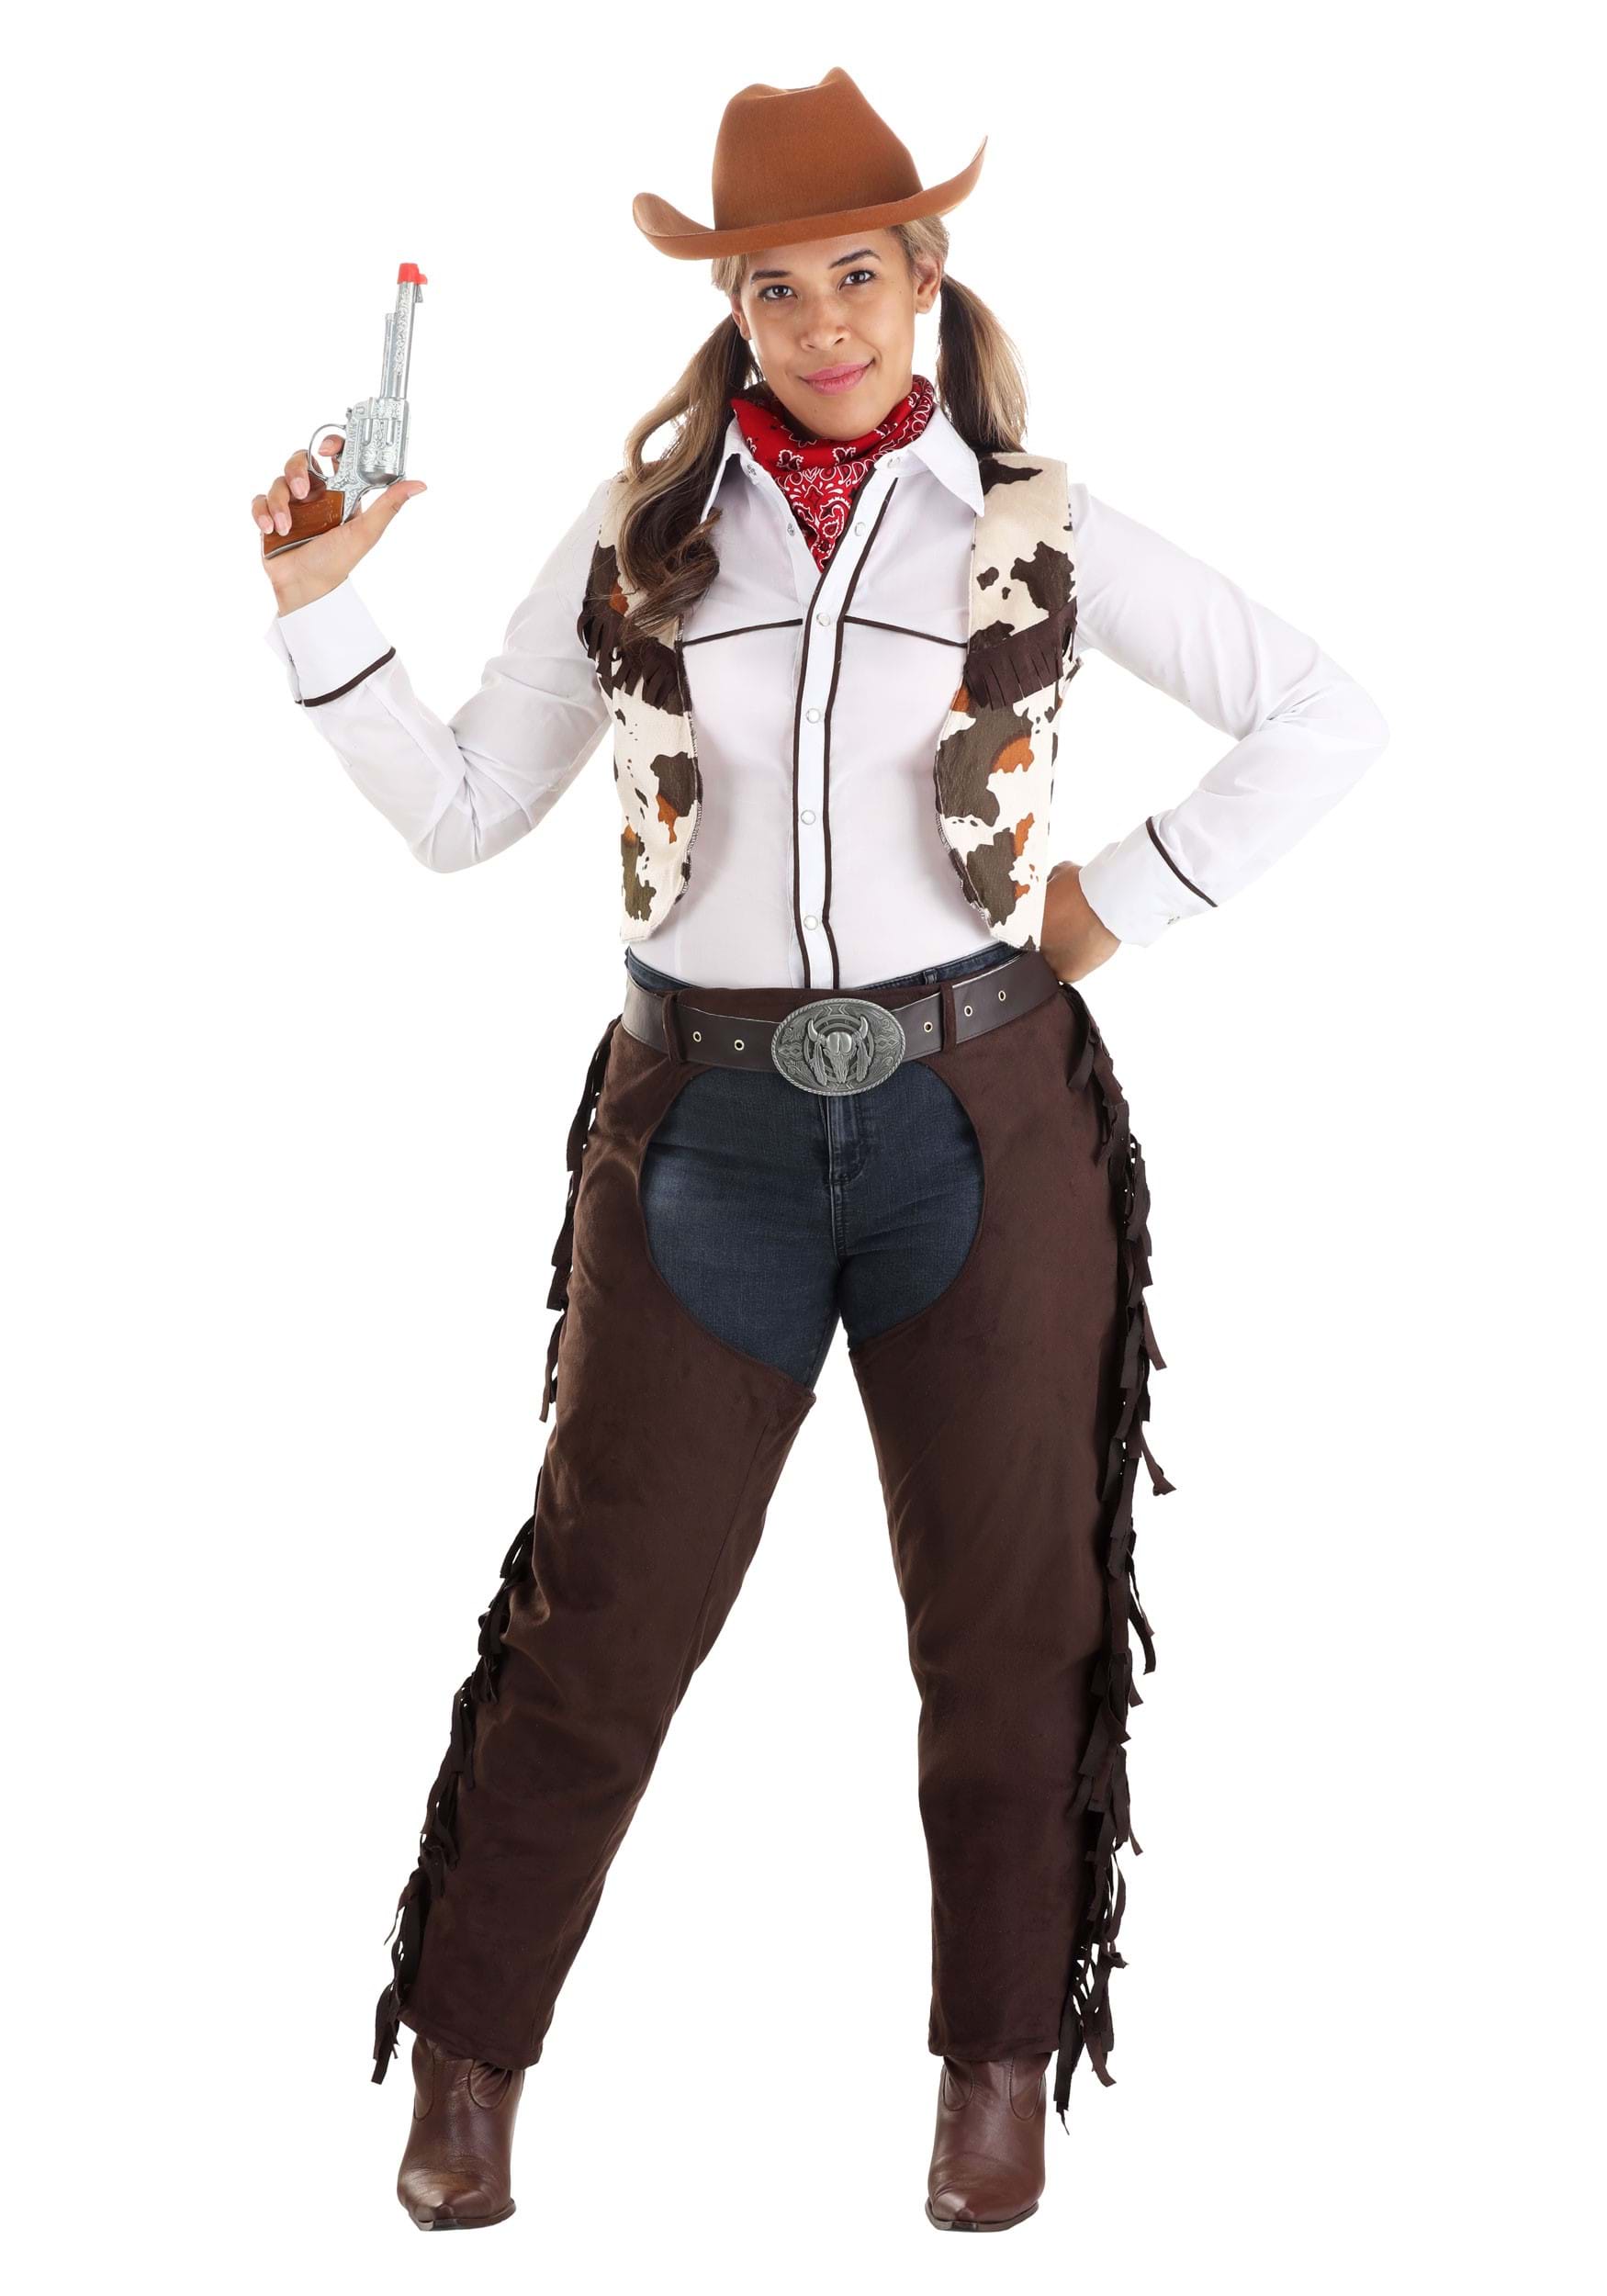 Glitzy Cowgirl Costume for Women